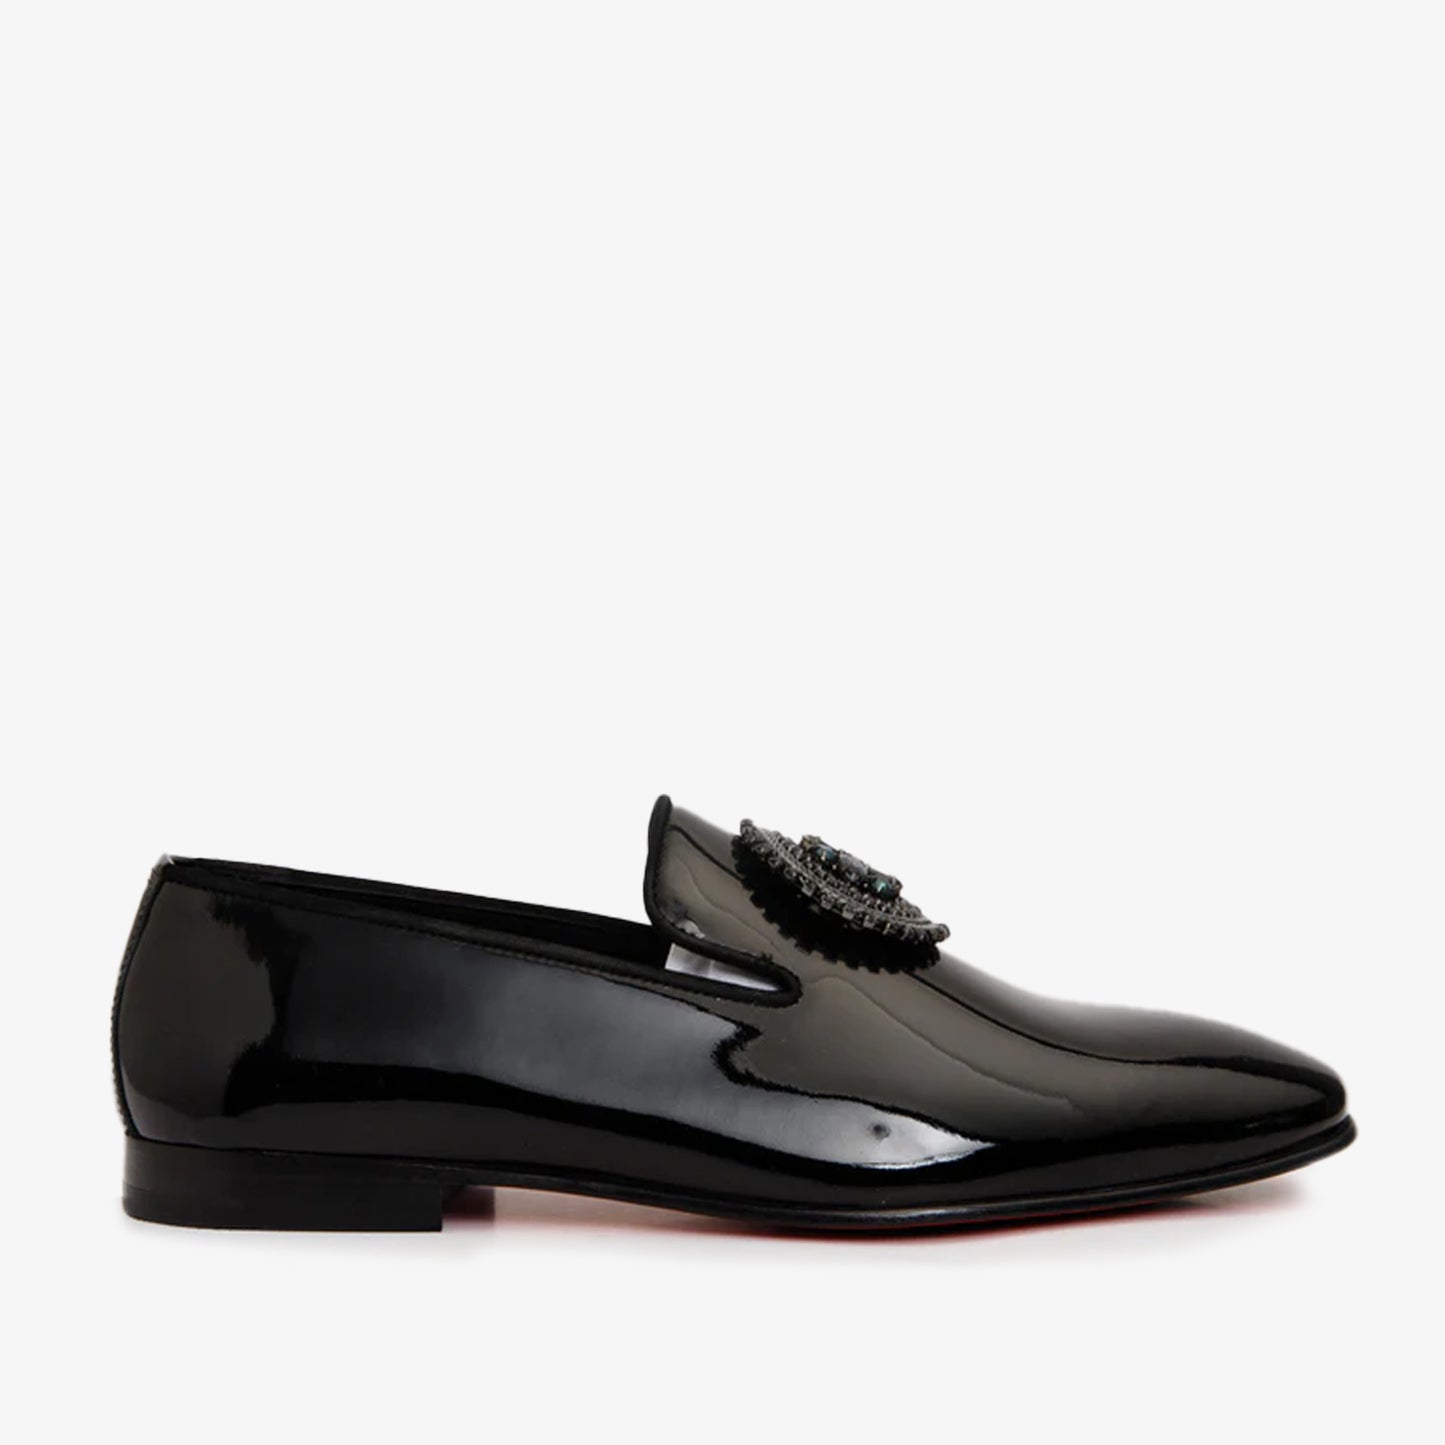 The Pombe Black Patent Leather Dress Slip-on Loafer Men Shoe – Vinci ...